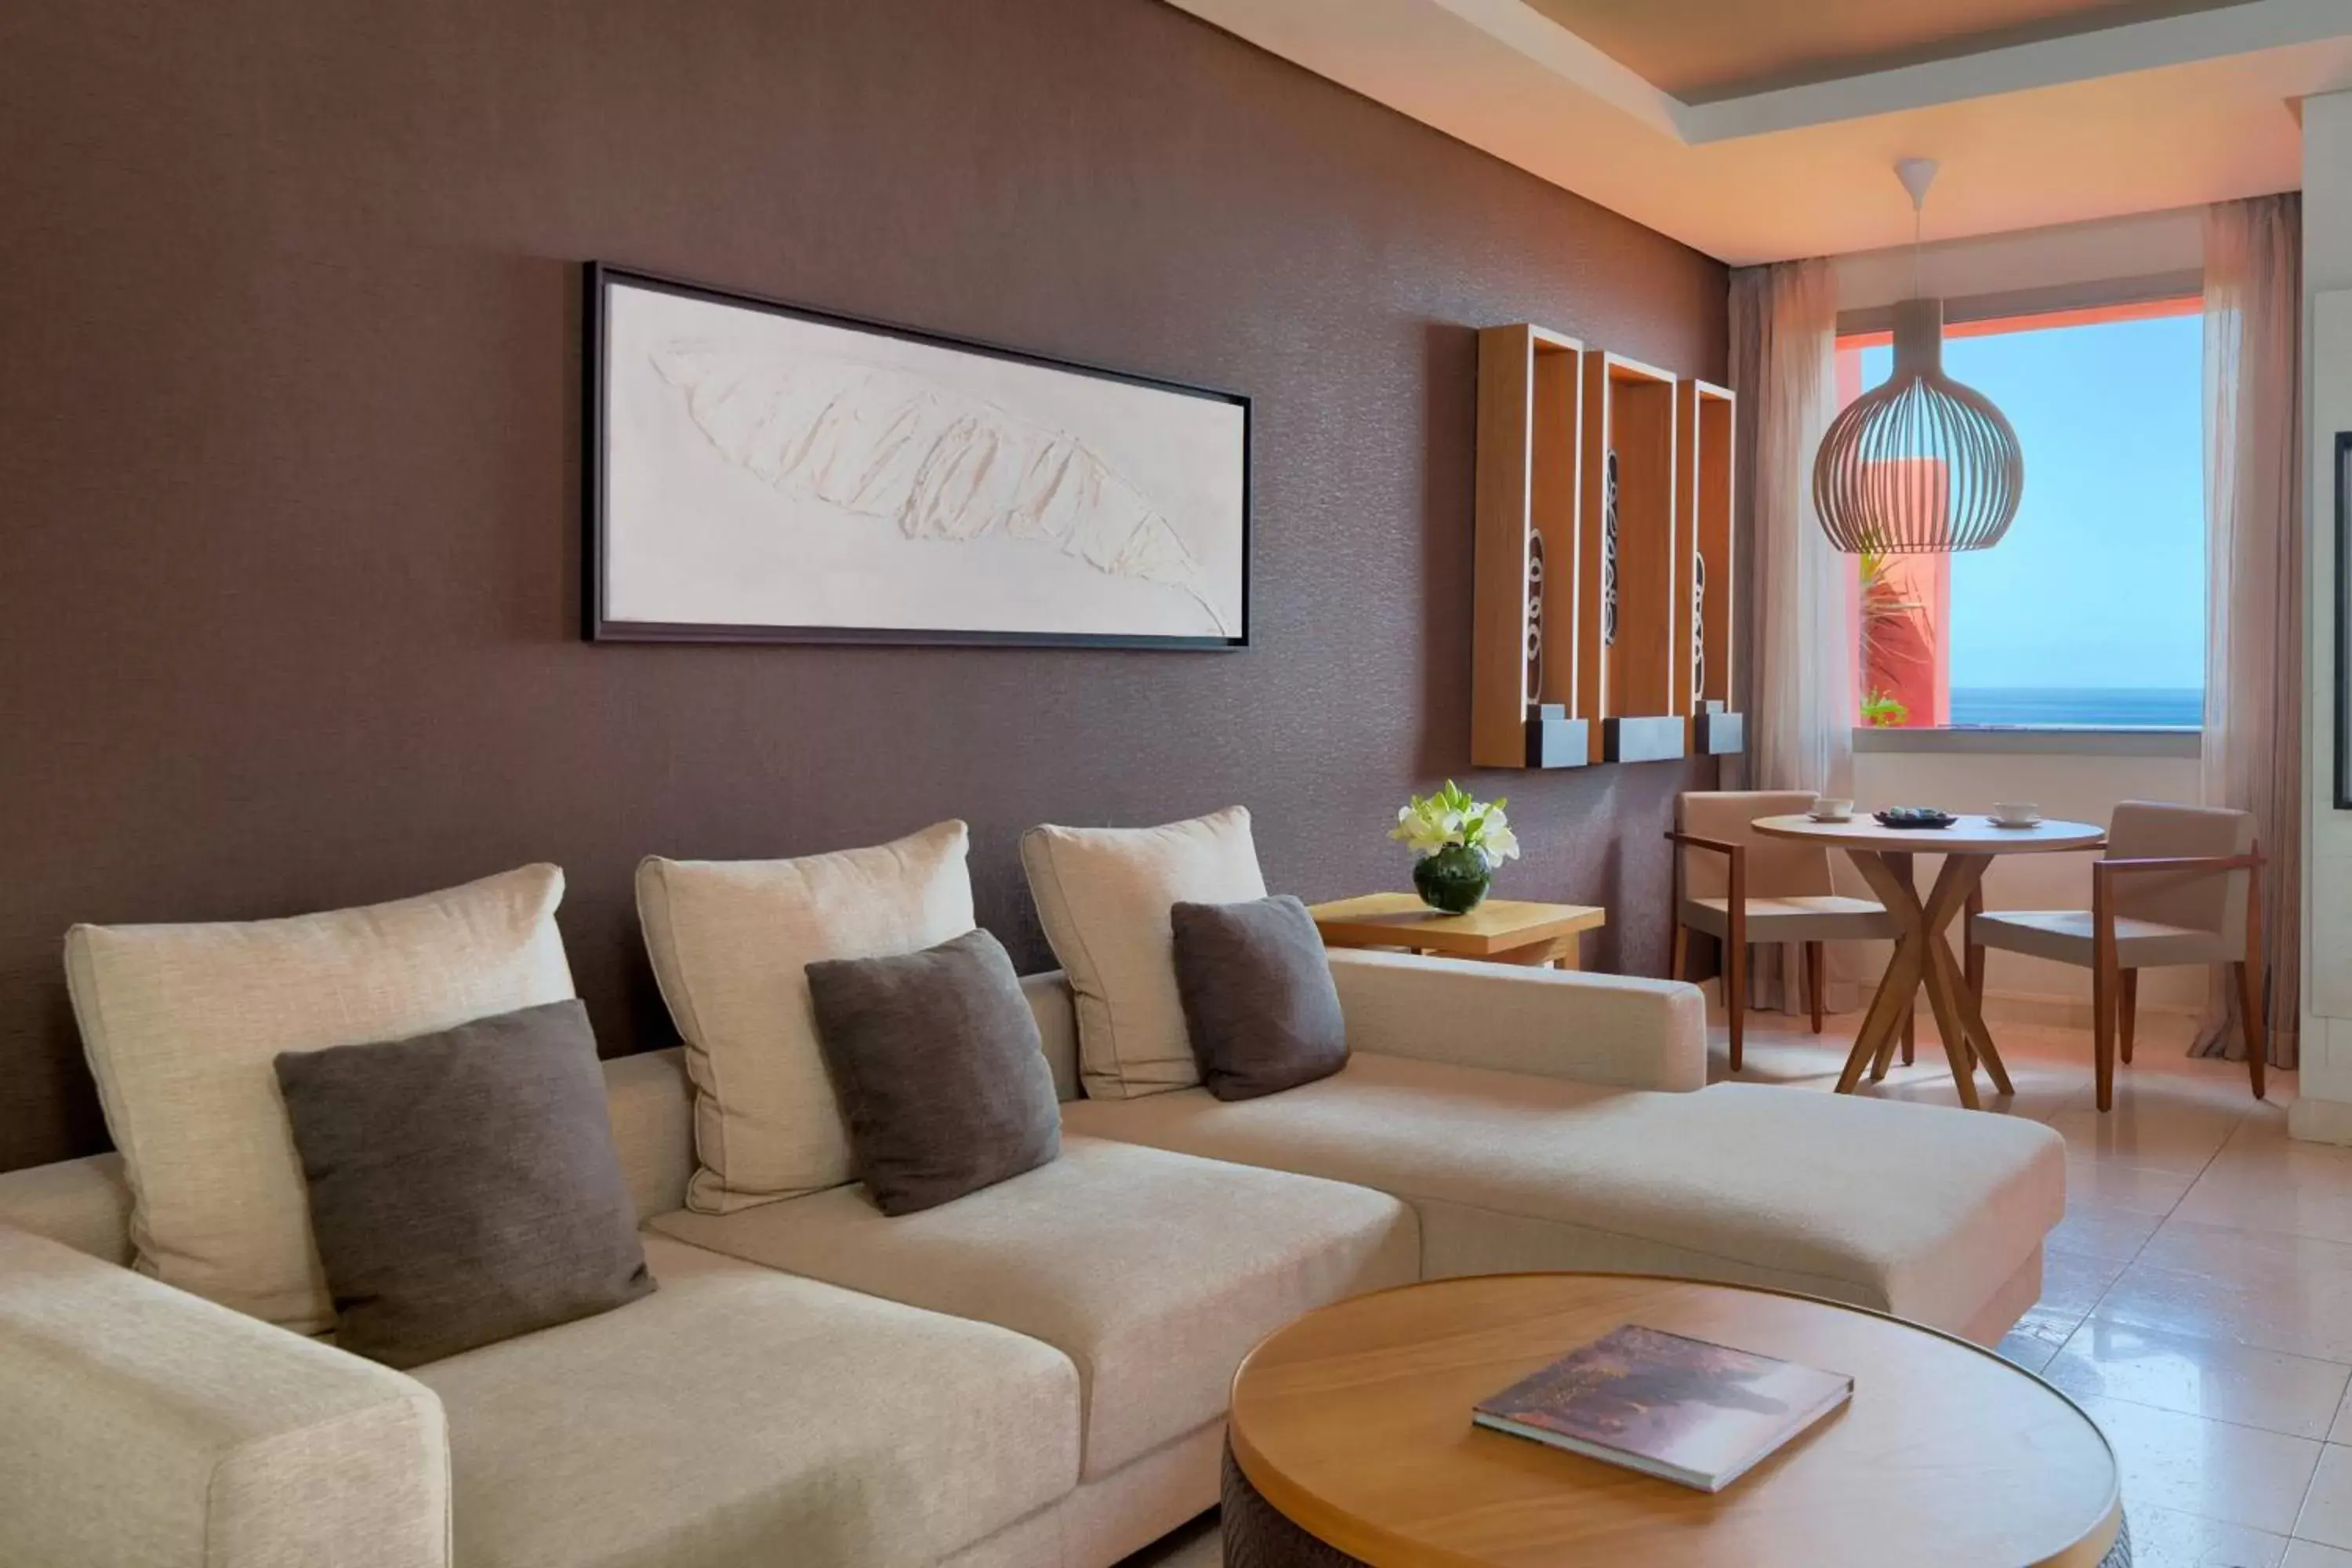 Lounge or bar, Seating Area in The Ritz-Carlton Tenerife, Abama